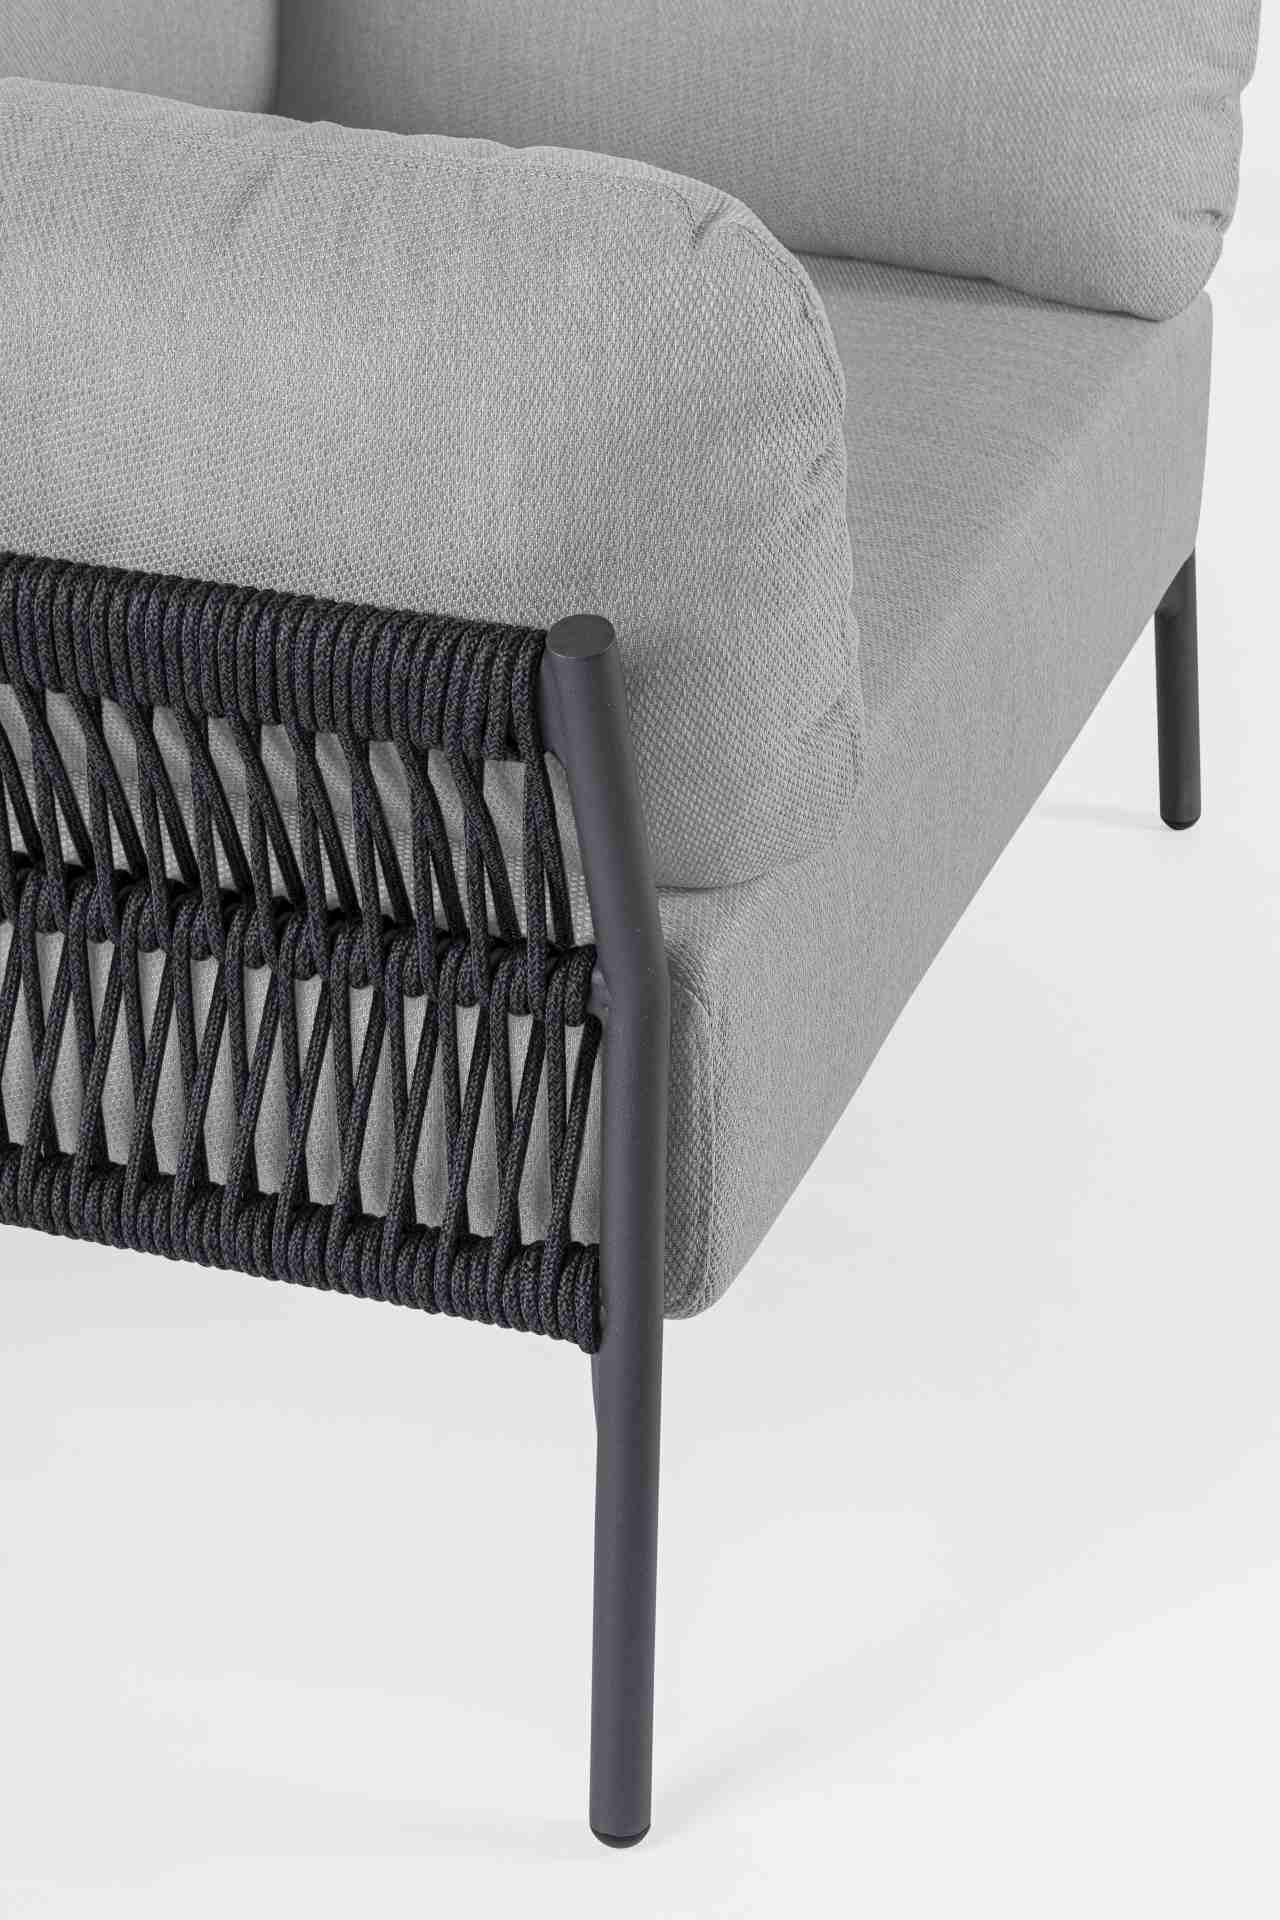 Der Gartensessel Pardis überzeugt mit seinem modernen Design. Gefertigt wurde er aus Olefin-Stoff, welcher einen grauen Farbton besitzt. Das Gestell ist aus Aluminium und hat eine Anthrazit Farbe. Der Sessel verfügt über eine Sitzhöhe von 38 cm und ist fü